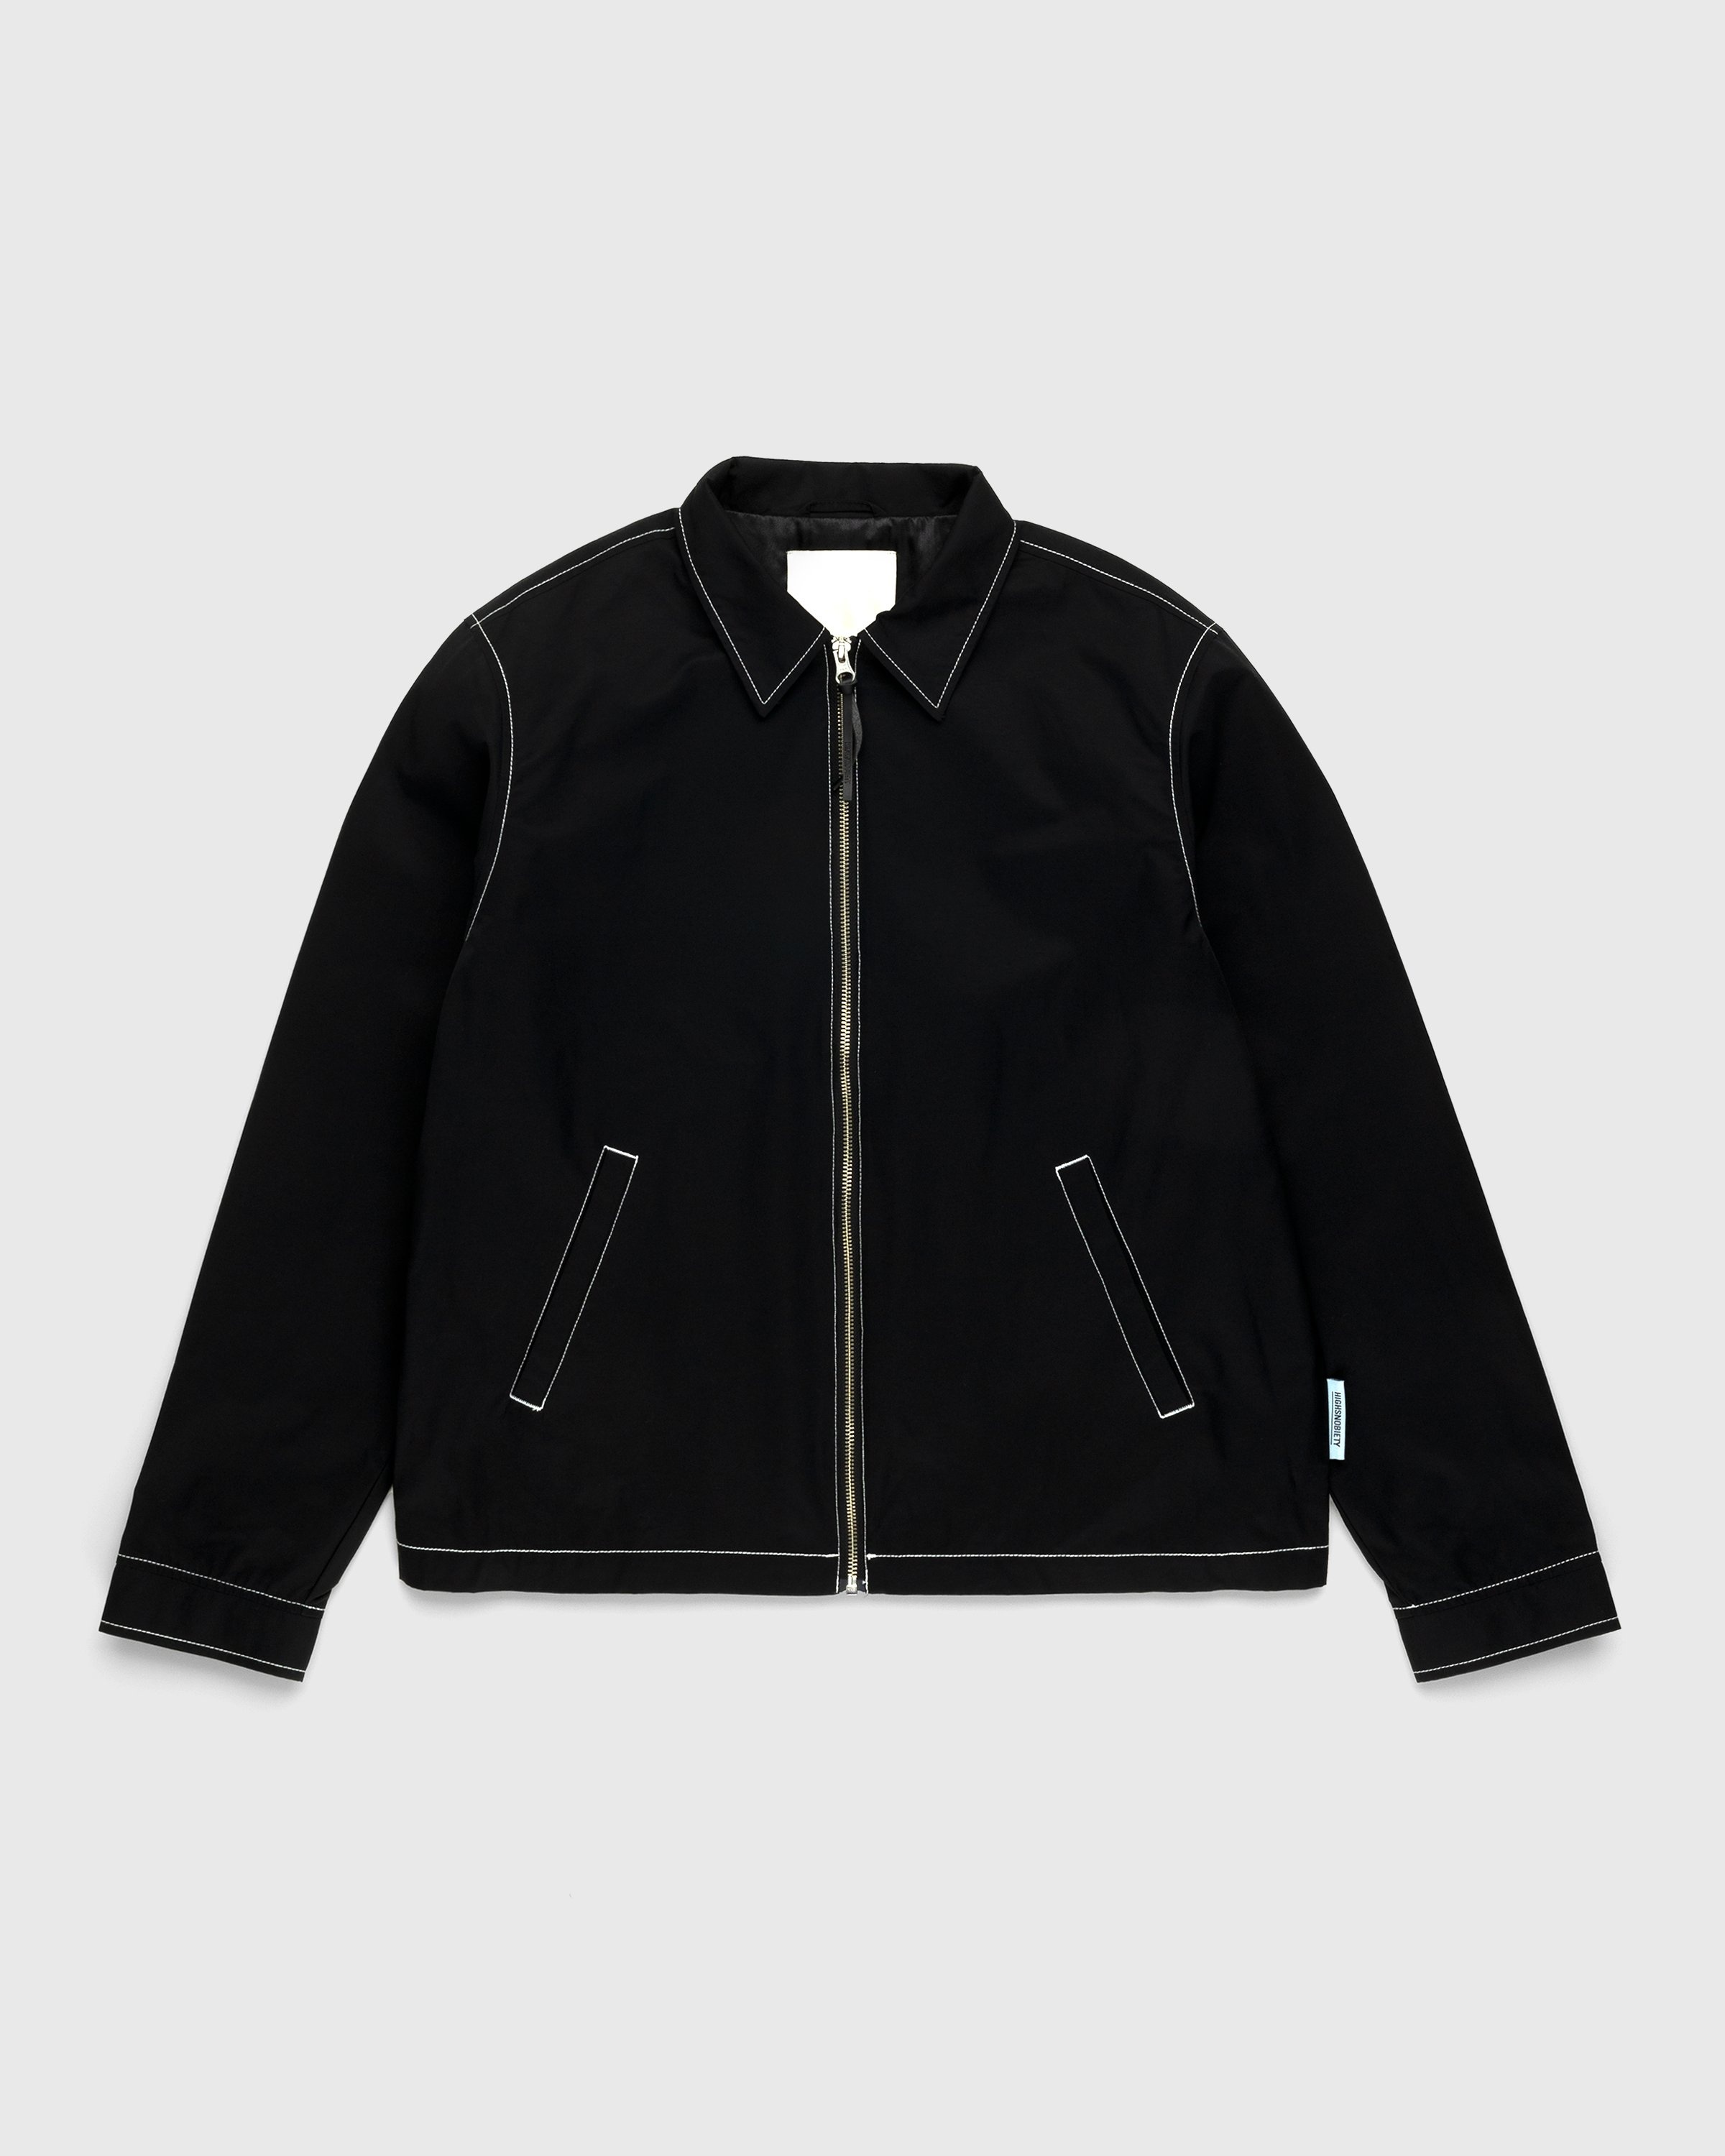 Highsnobiety – Brushed Nylon Jacket Black - Outerwear - Black - Image 1